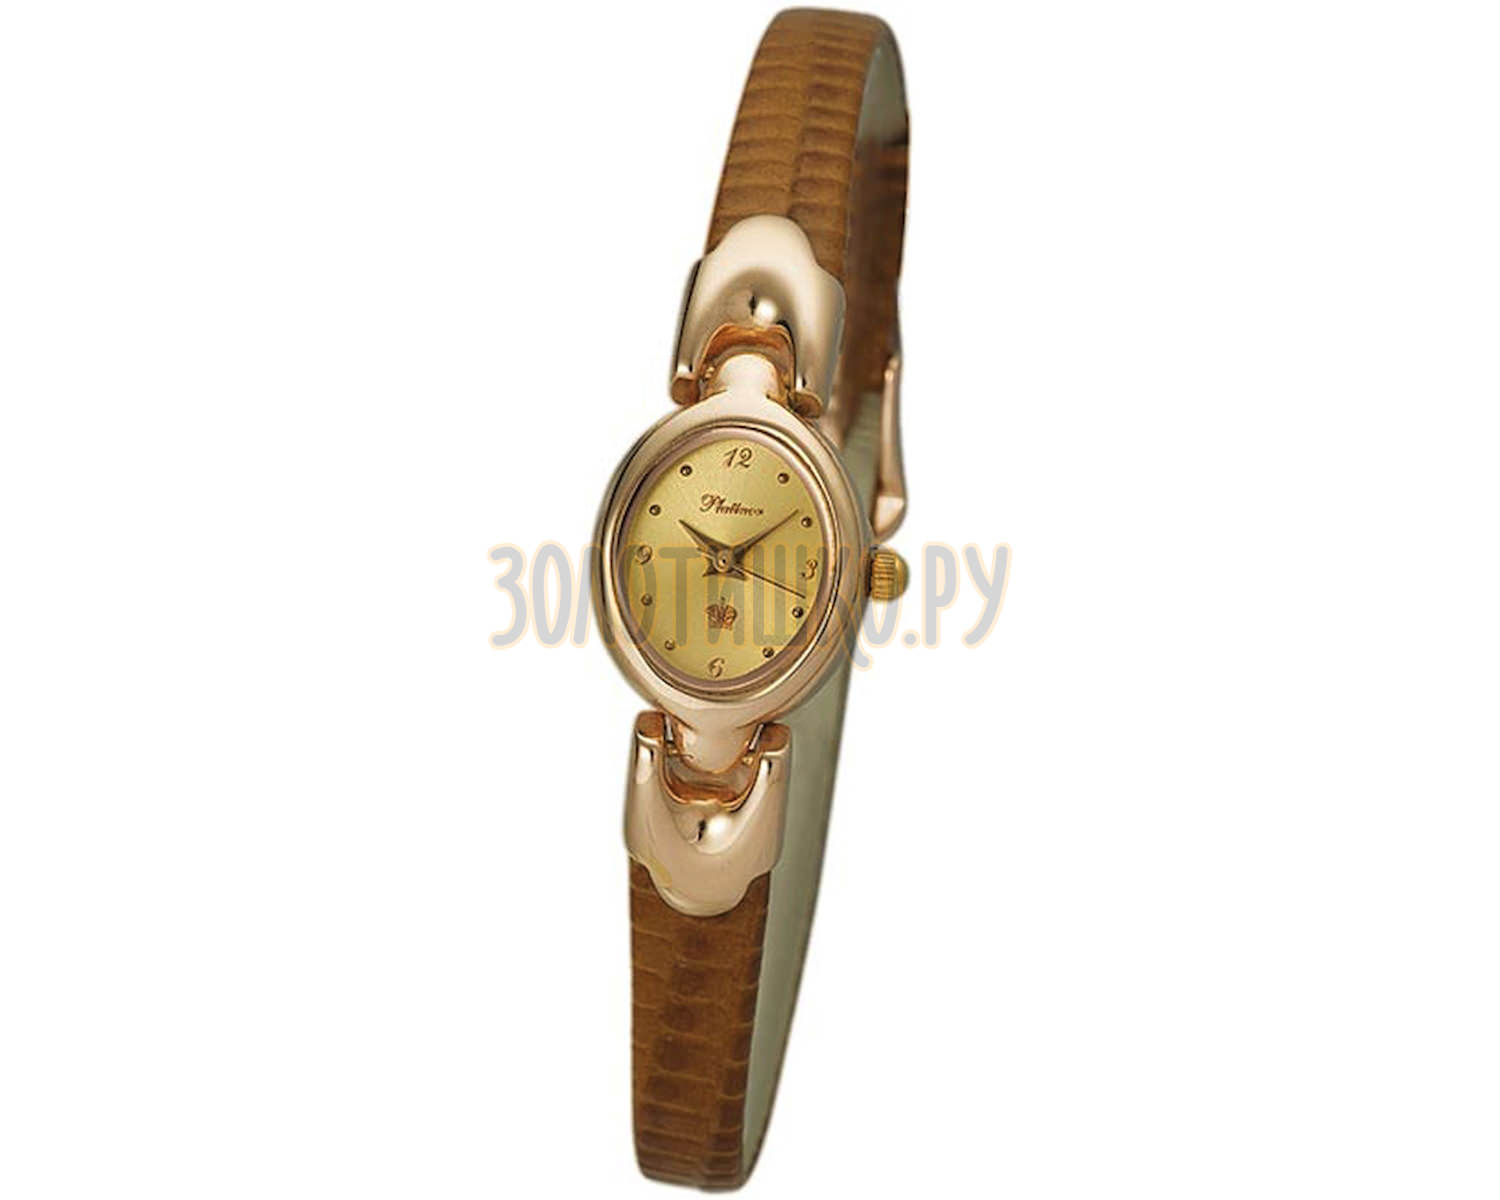 Магазин 585 часы. Наручные часы Platinor 200450.316. Золотые женские часы Platinor часы. Платинор часы золотые женские браслет 585. Золотые часы Platinor женские 0360.